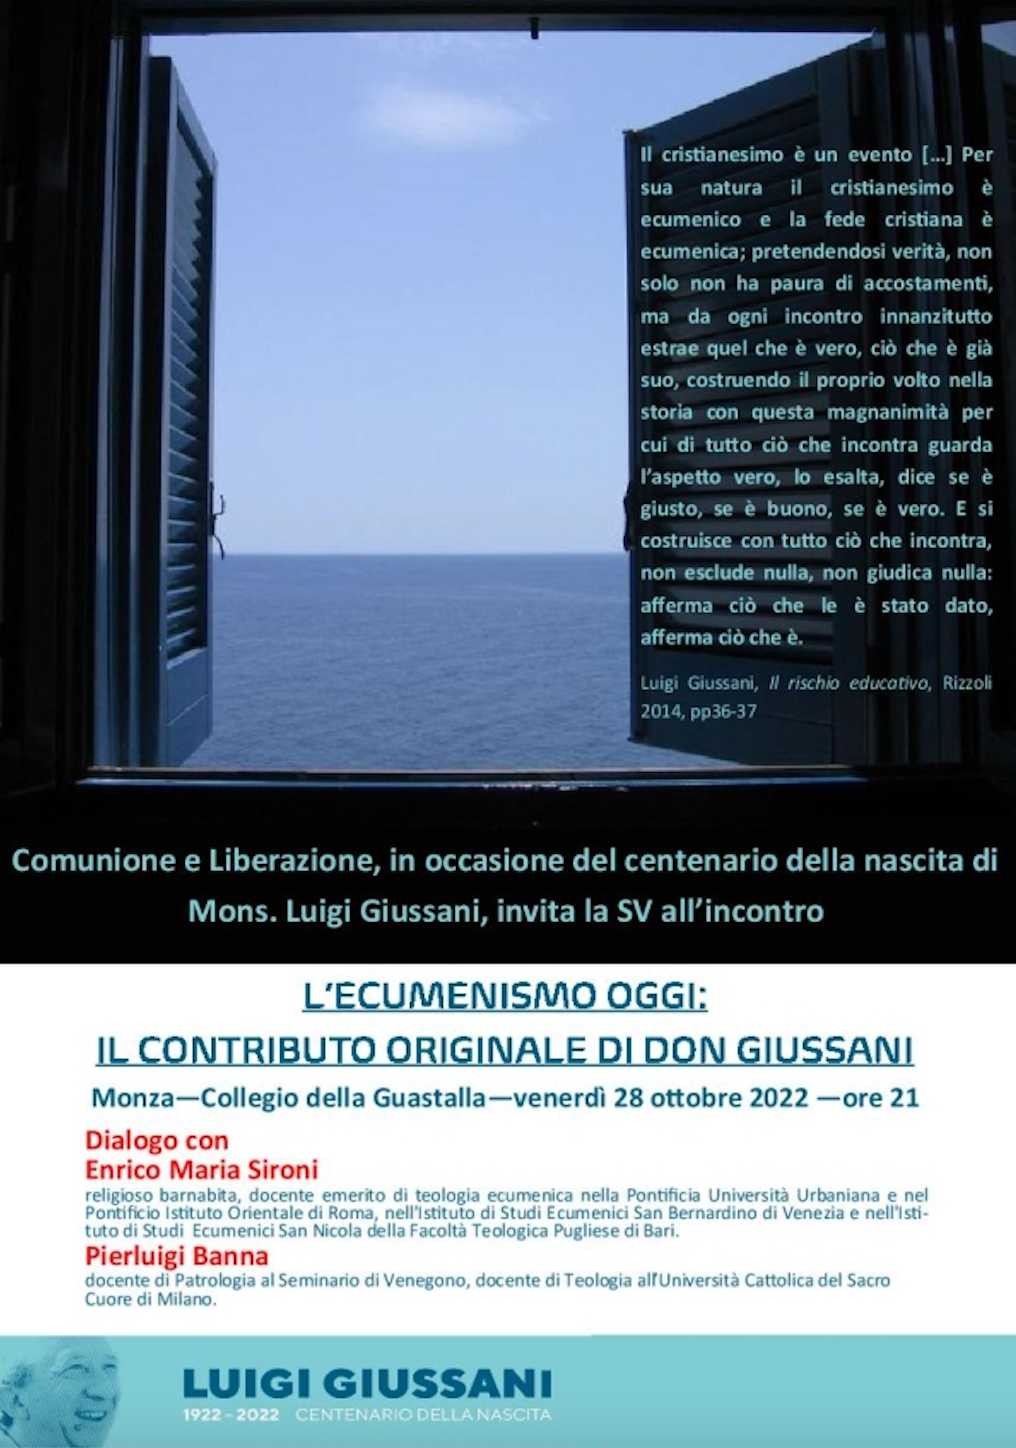 Featured image for “Monza: L’ecumenismo oggi”